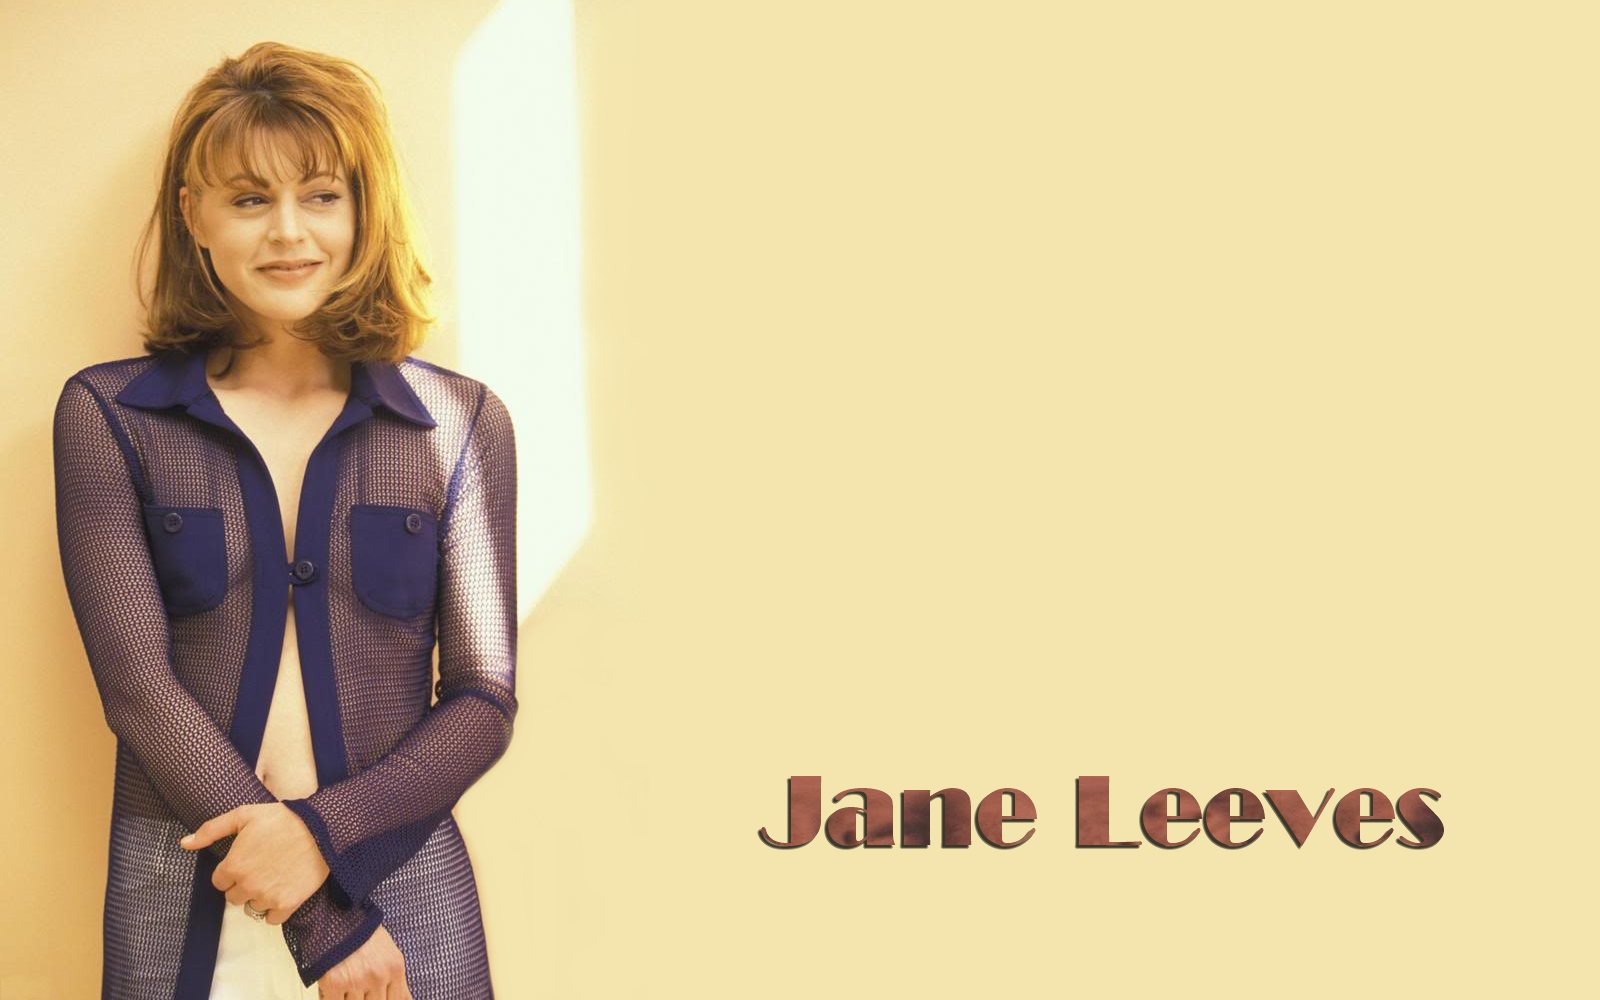 Jane Leeves See Through